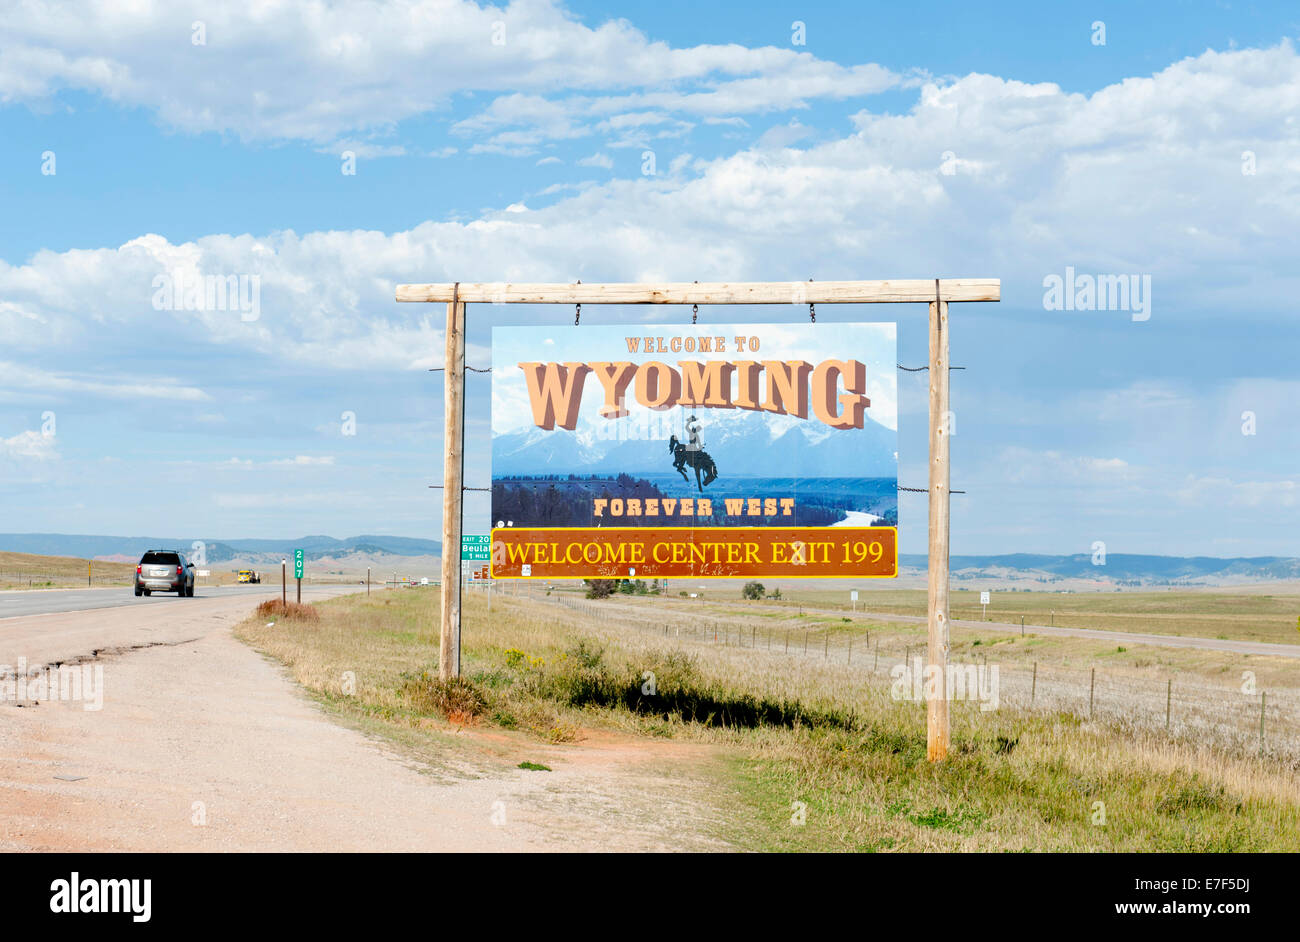 Willkommen Schild auf einer Autobahn, "Willkommen in Wyoming, Forever West", flache Landschaft, Wyoming, USA Stockfoto